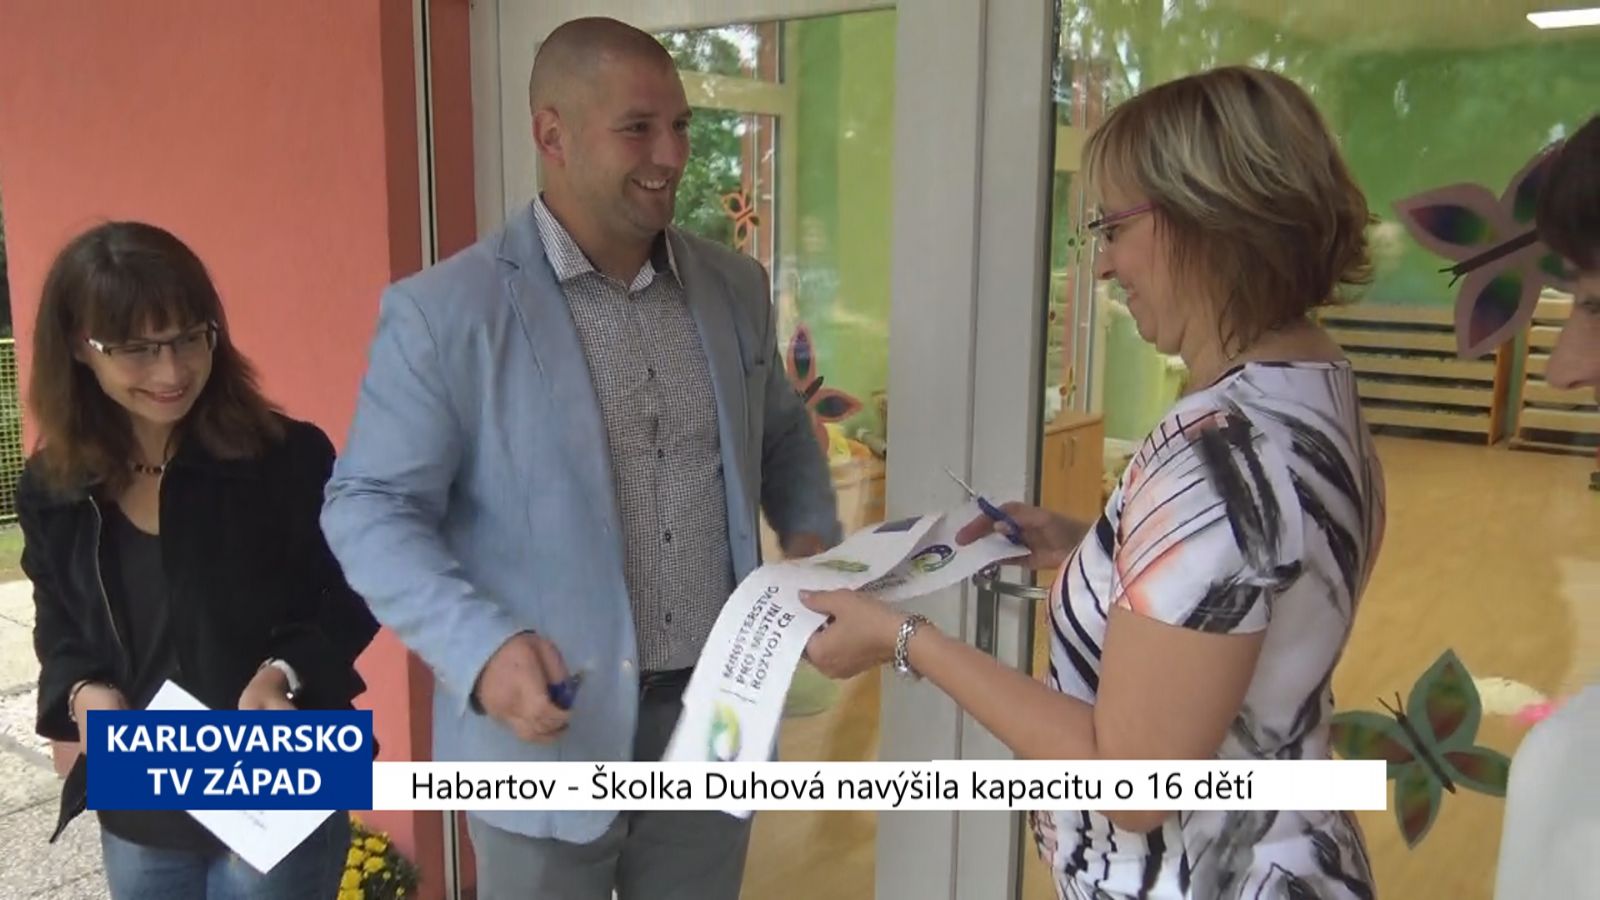 Habartov: Školka Duhová navýšila kapacitu o 16 dětí (TV Západ)